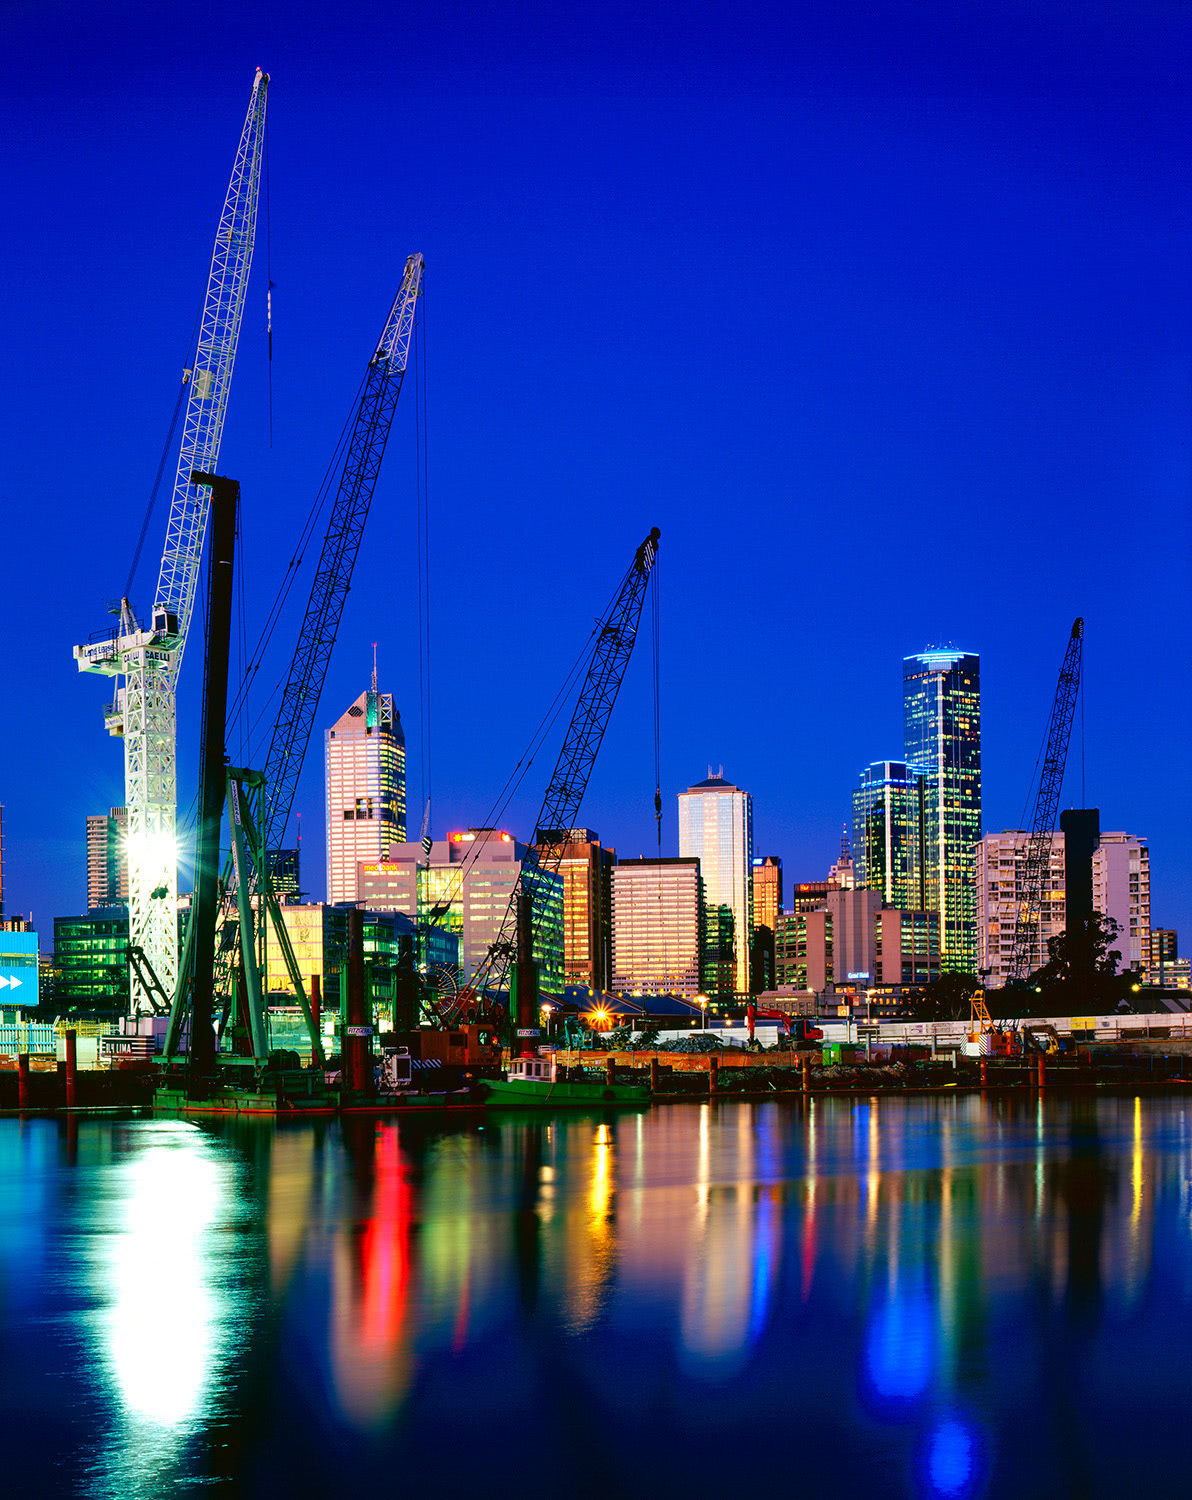 Melbourne Docklands reflections